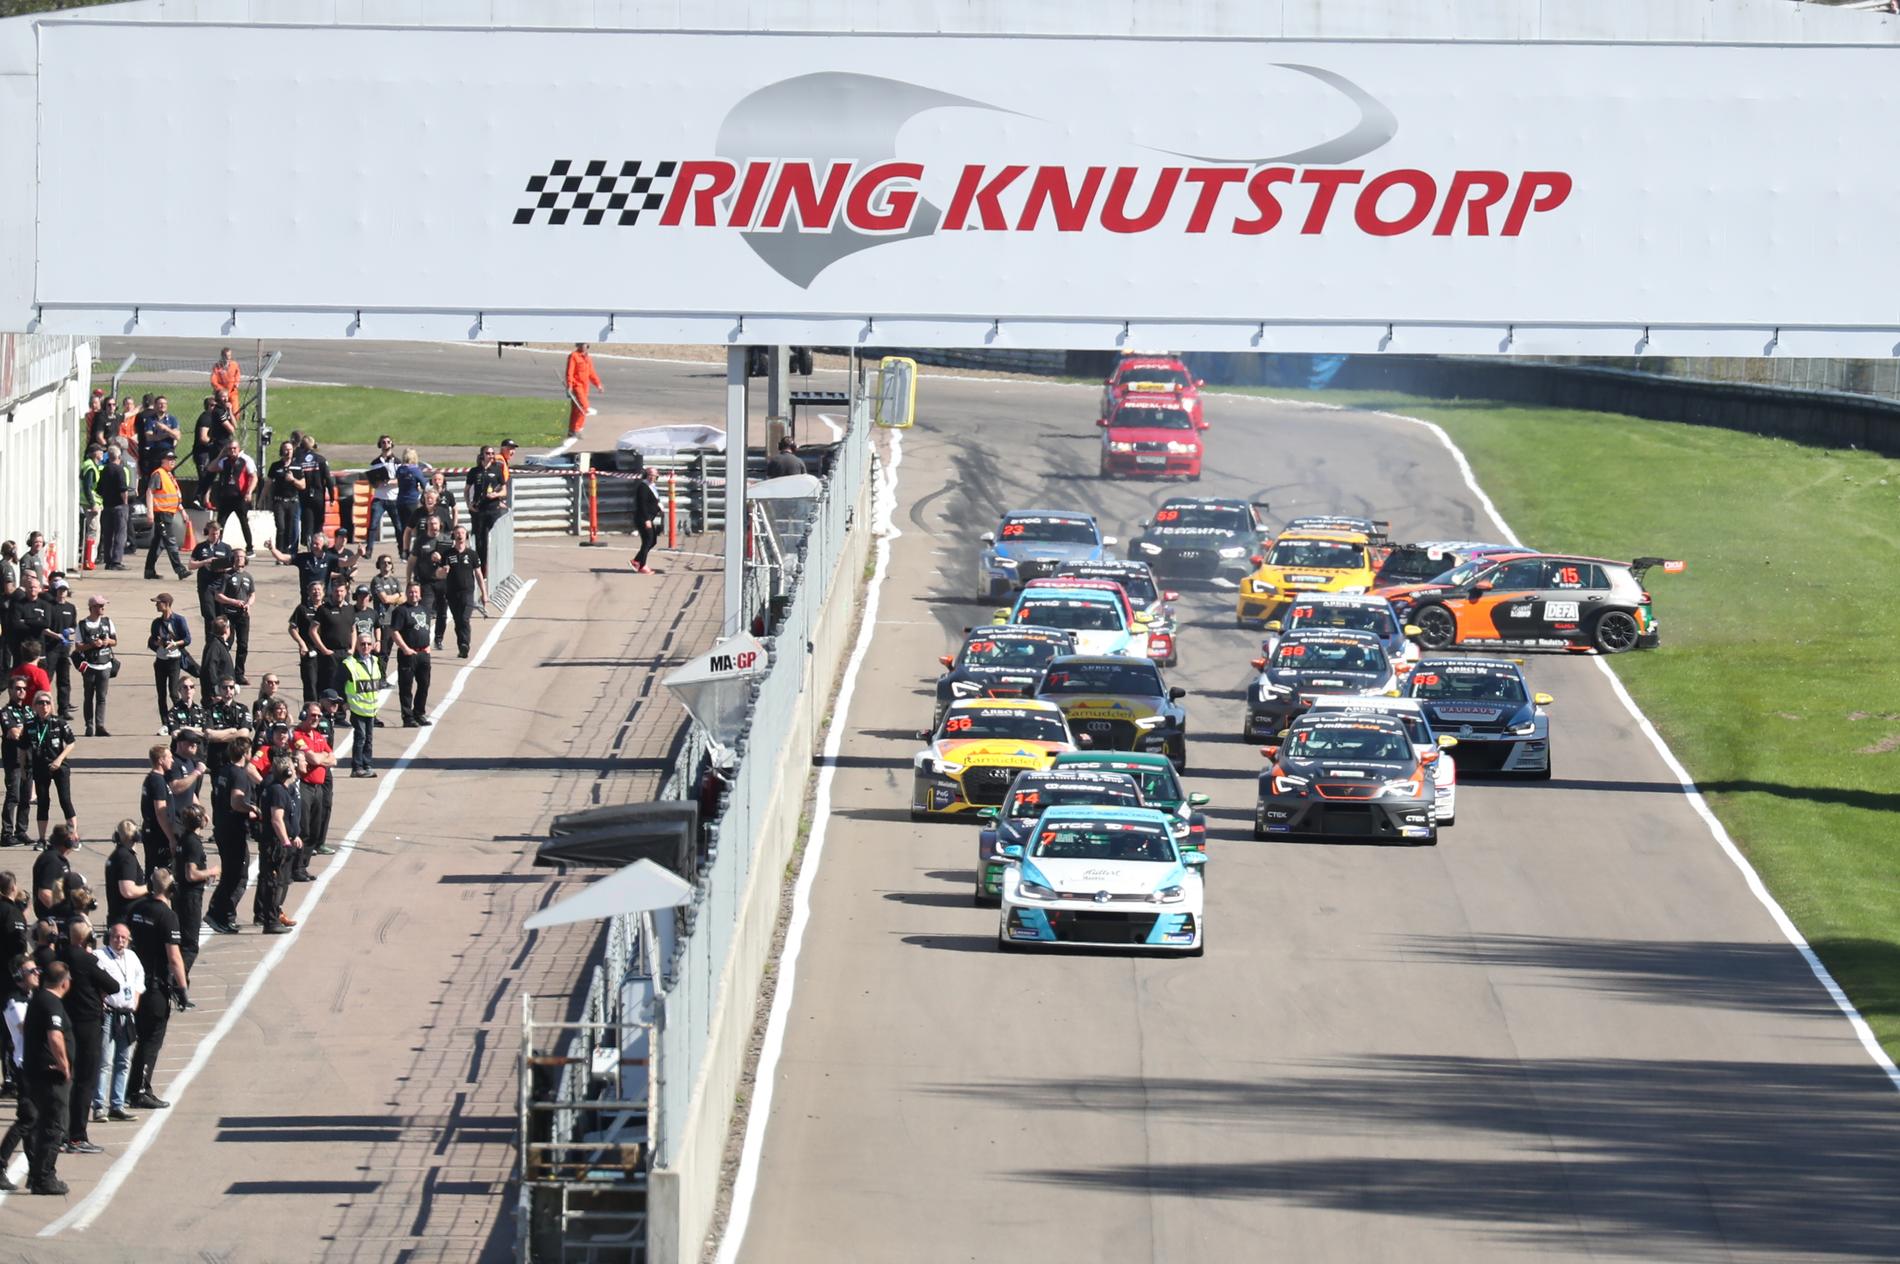 STCC-serien återuppstår som TCR-Scandinavia och har första tävlingen på Ring Knutstorp i maj. Arkivbild.